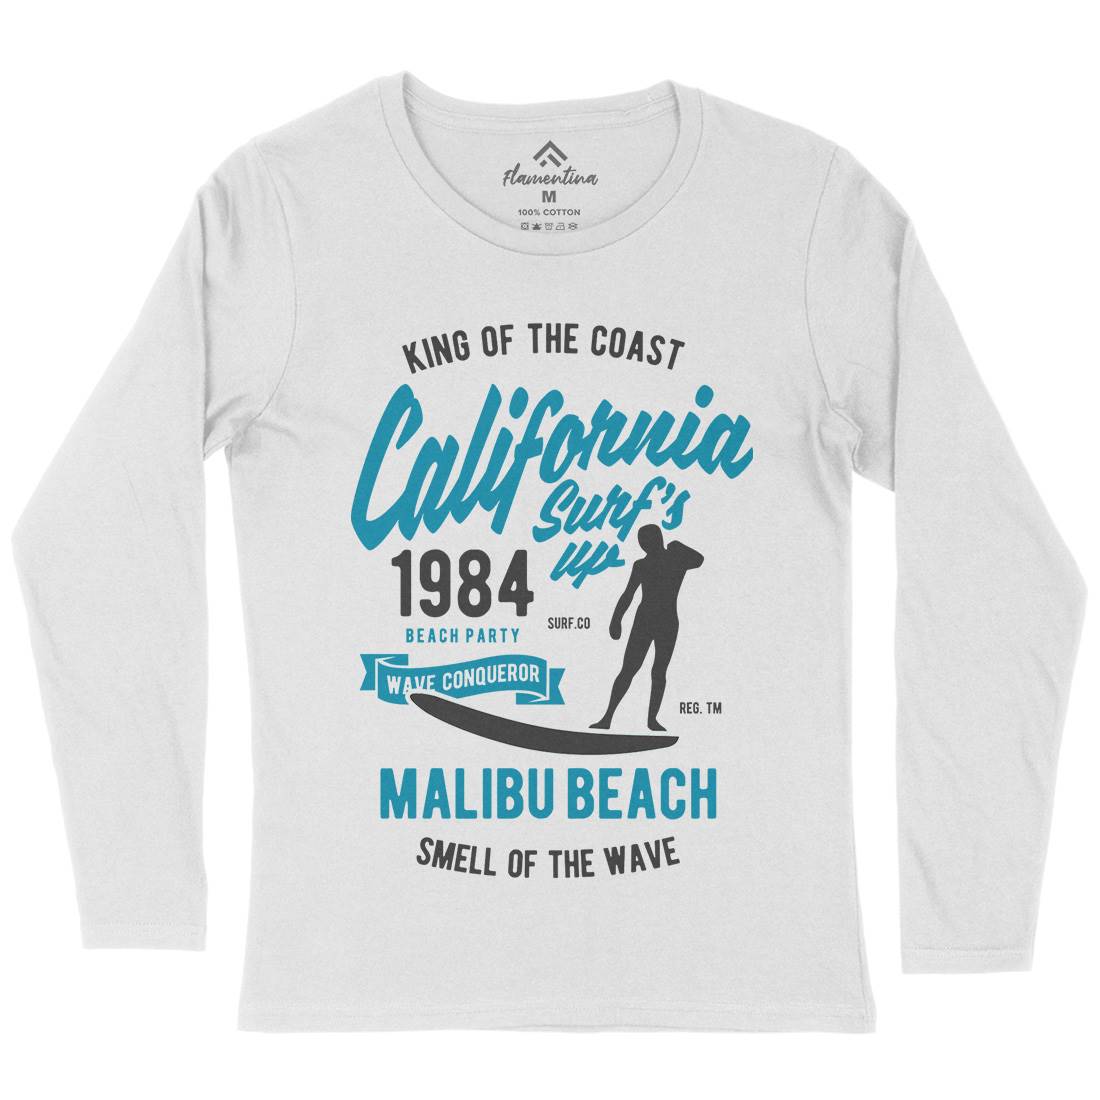 California Surfs Up Womens Long Sleeve T-Shirt Surf B389